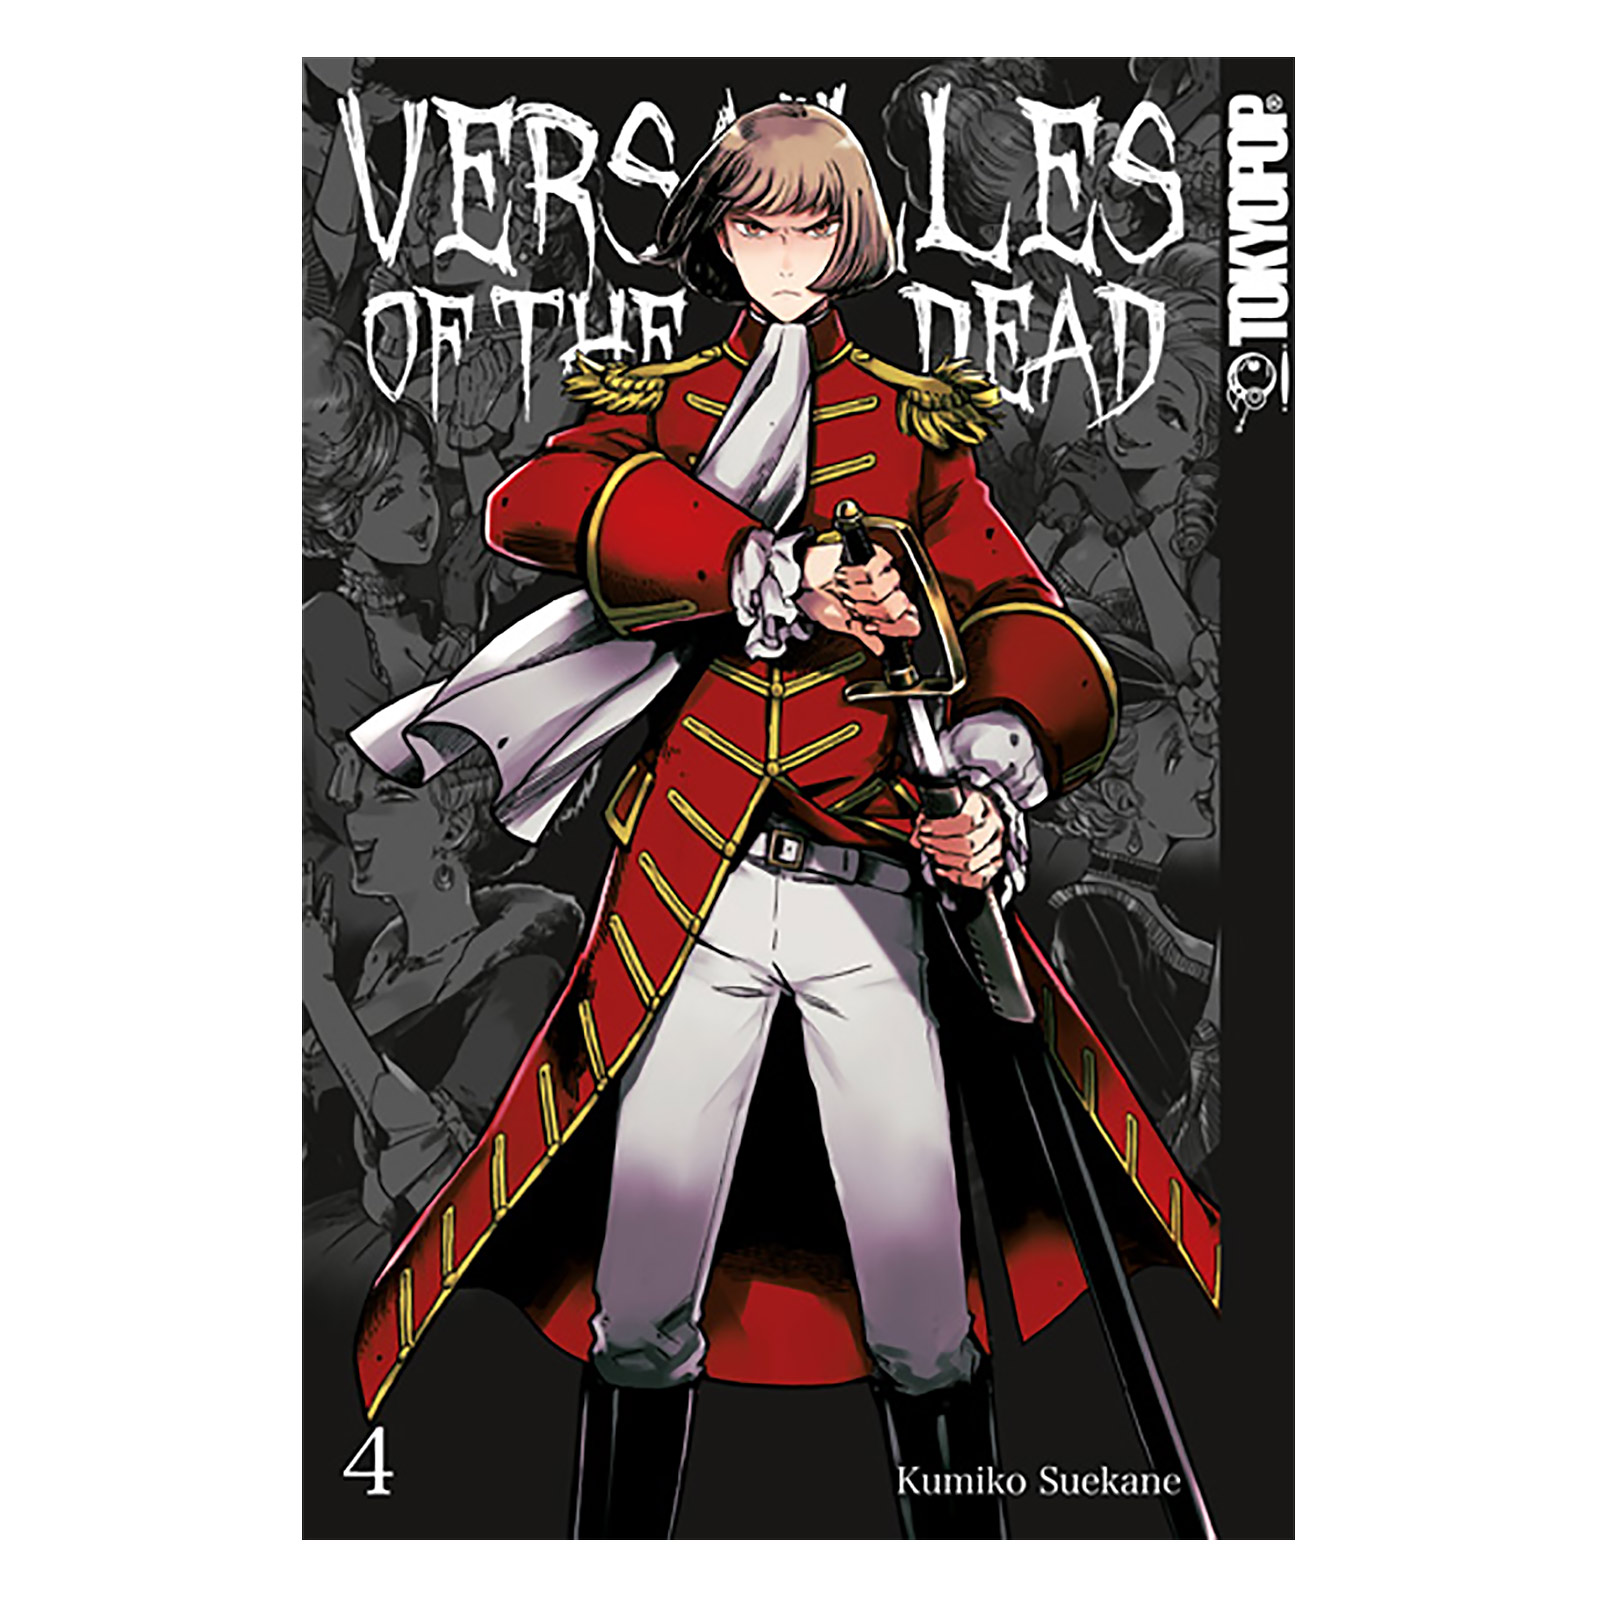 Versailles of the Dead - Band 4 Taschenbuch